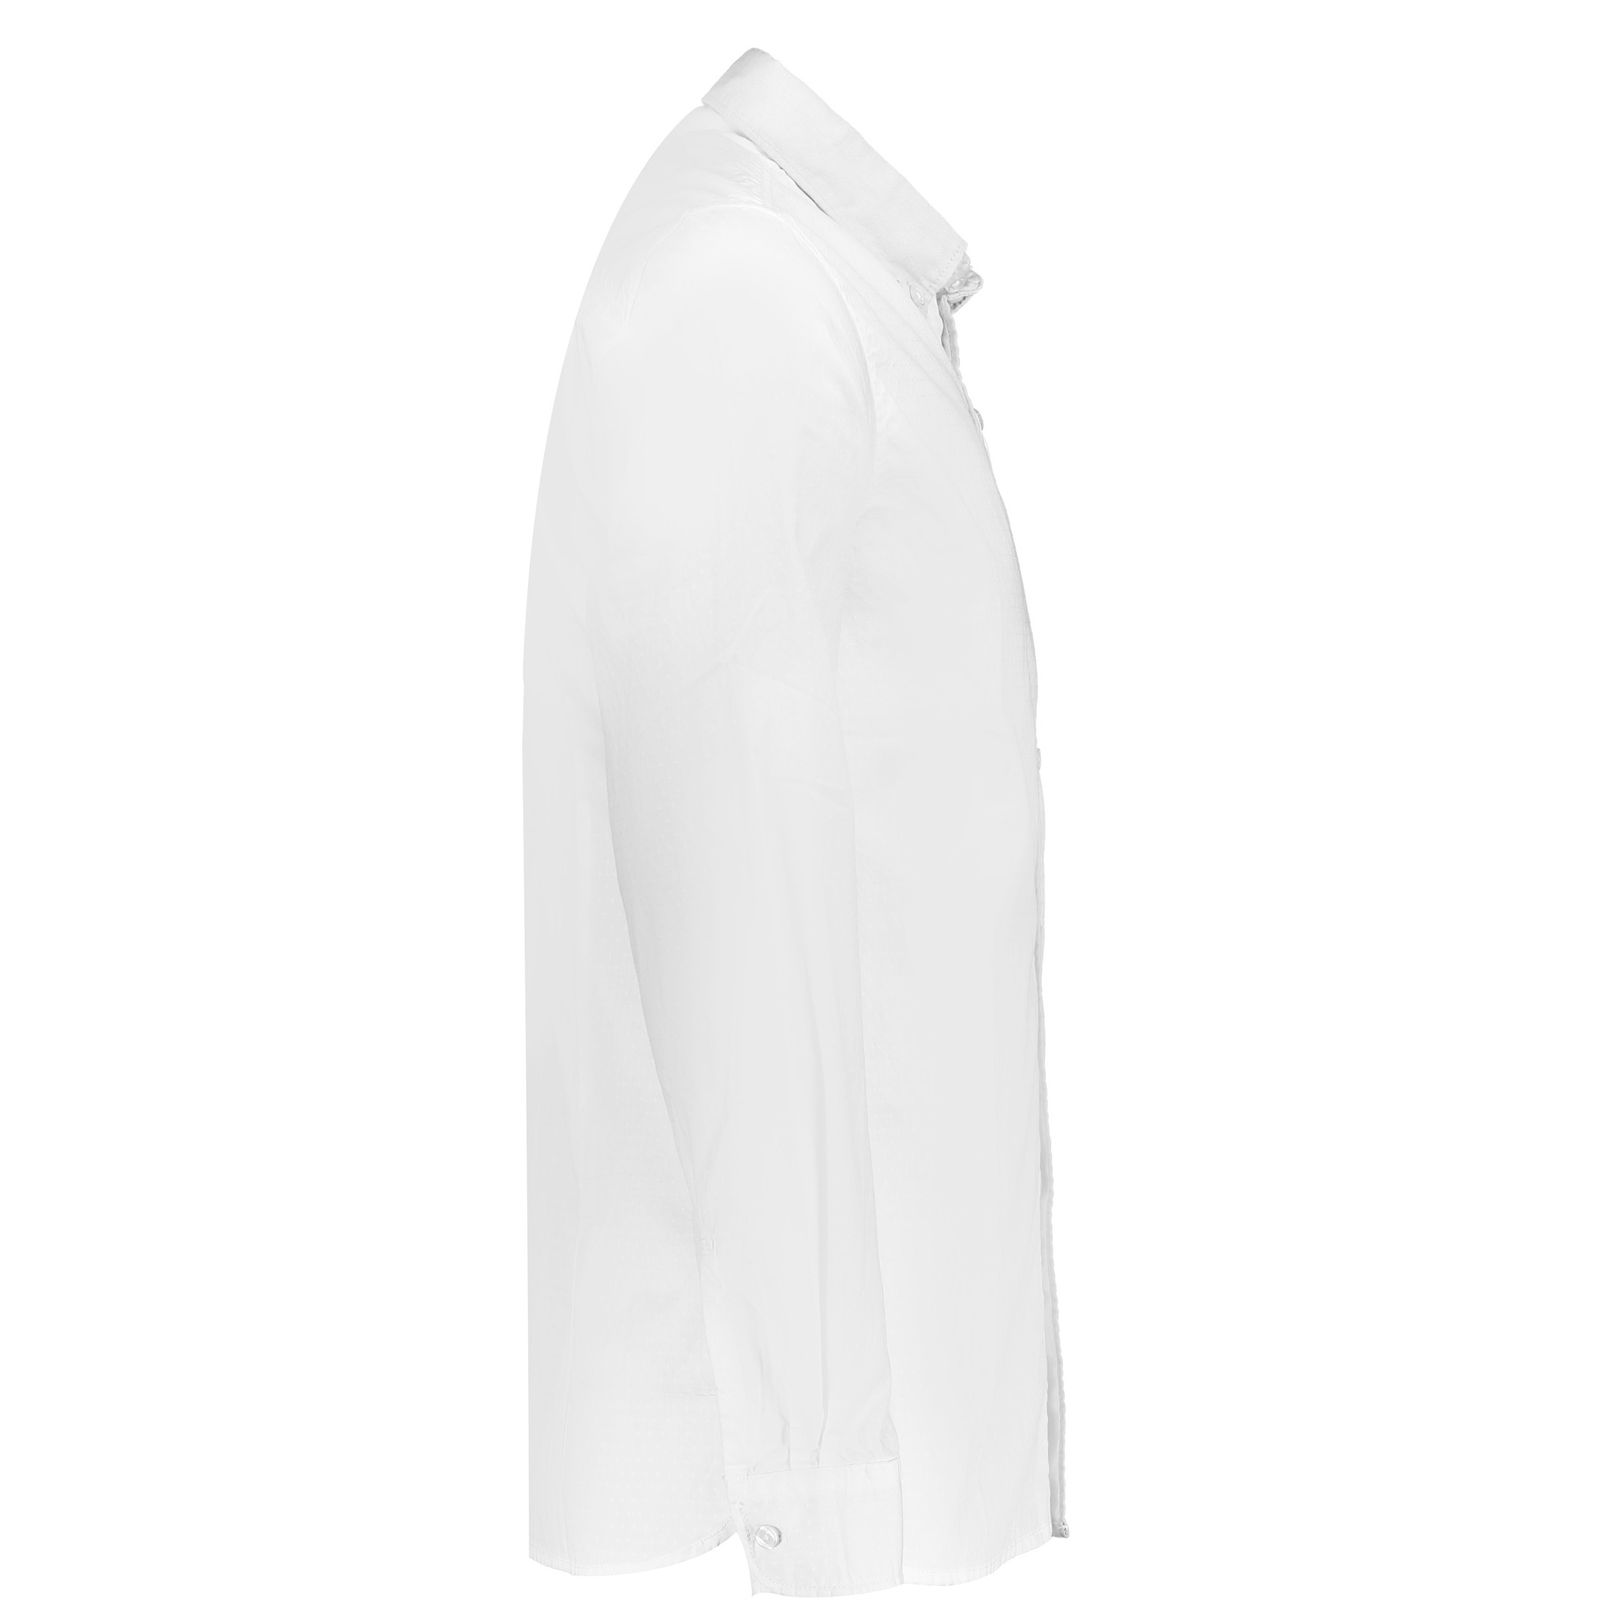 پیراهن مردانه اسپرینگ فیلد مدل 1506544-99 - سفید - 3